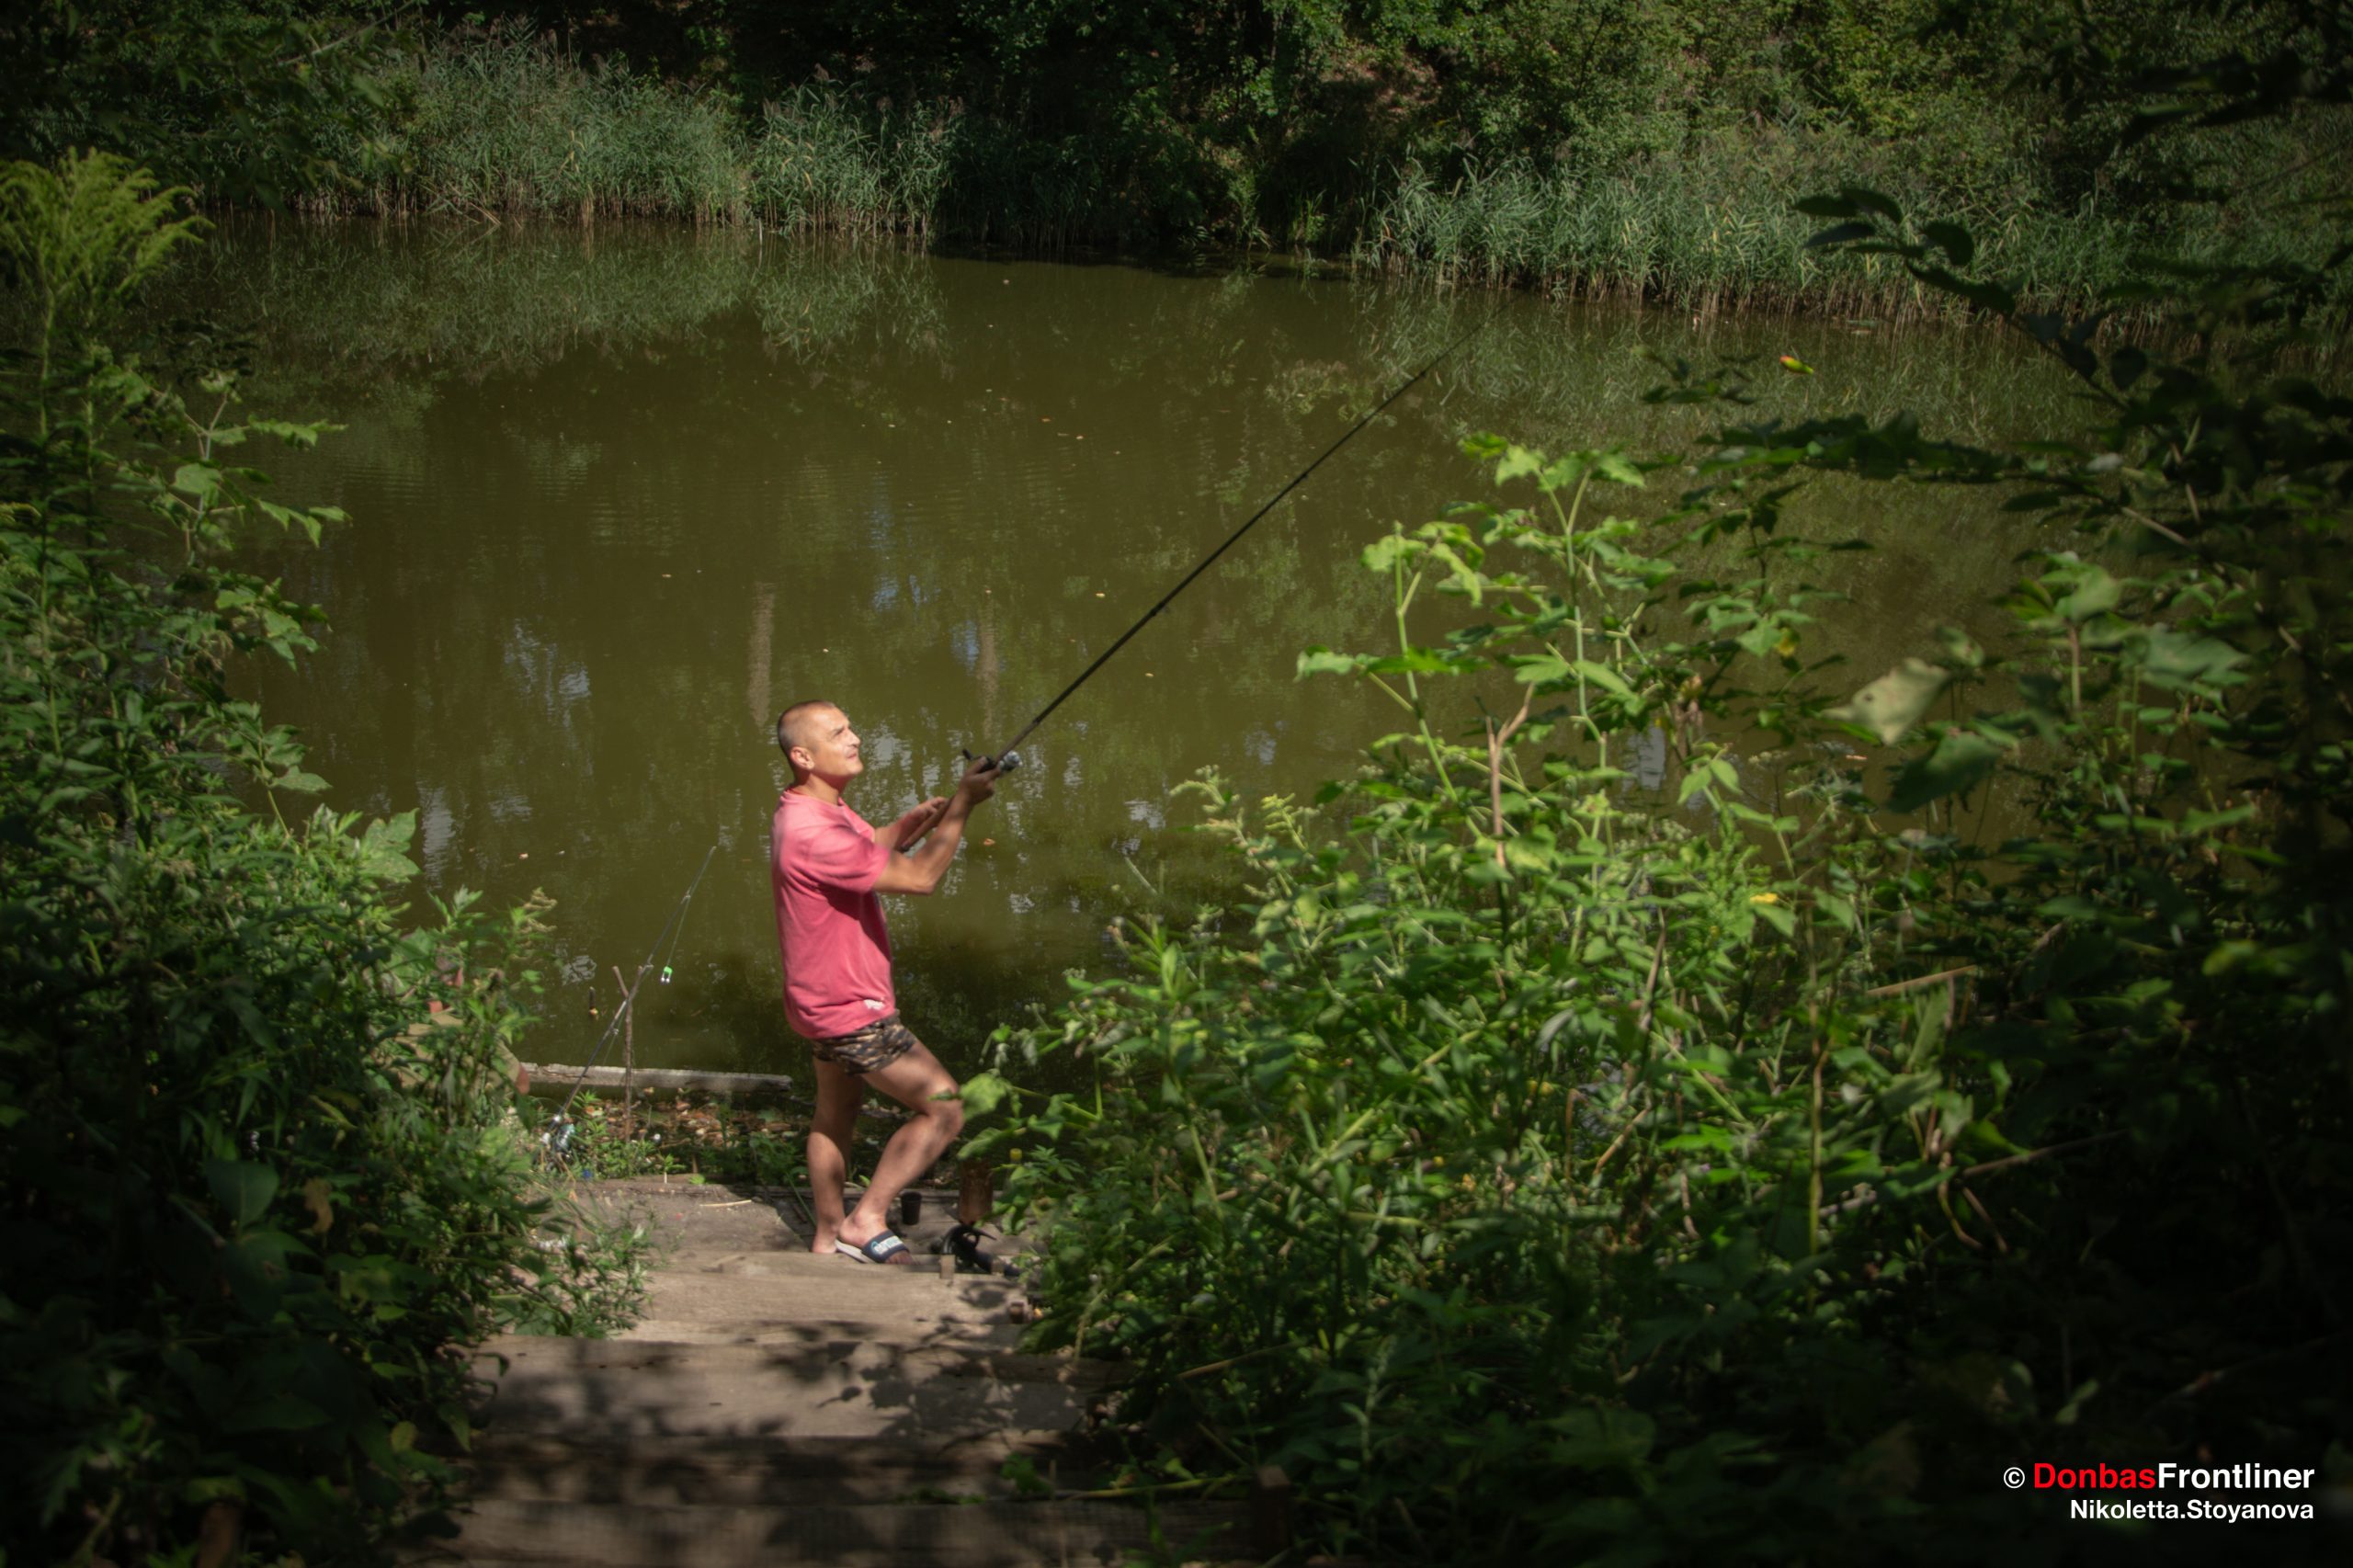 Donbas Frontliner / Рибалка на річці біля Центру